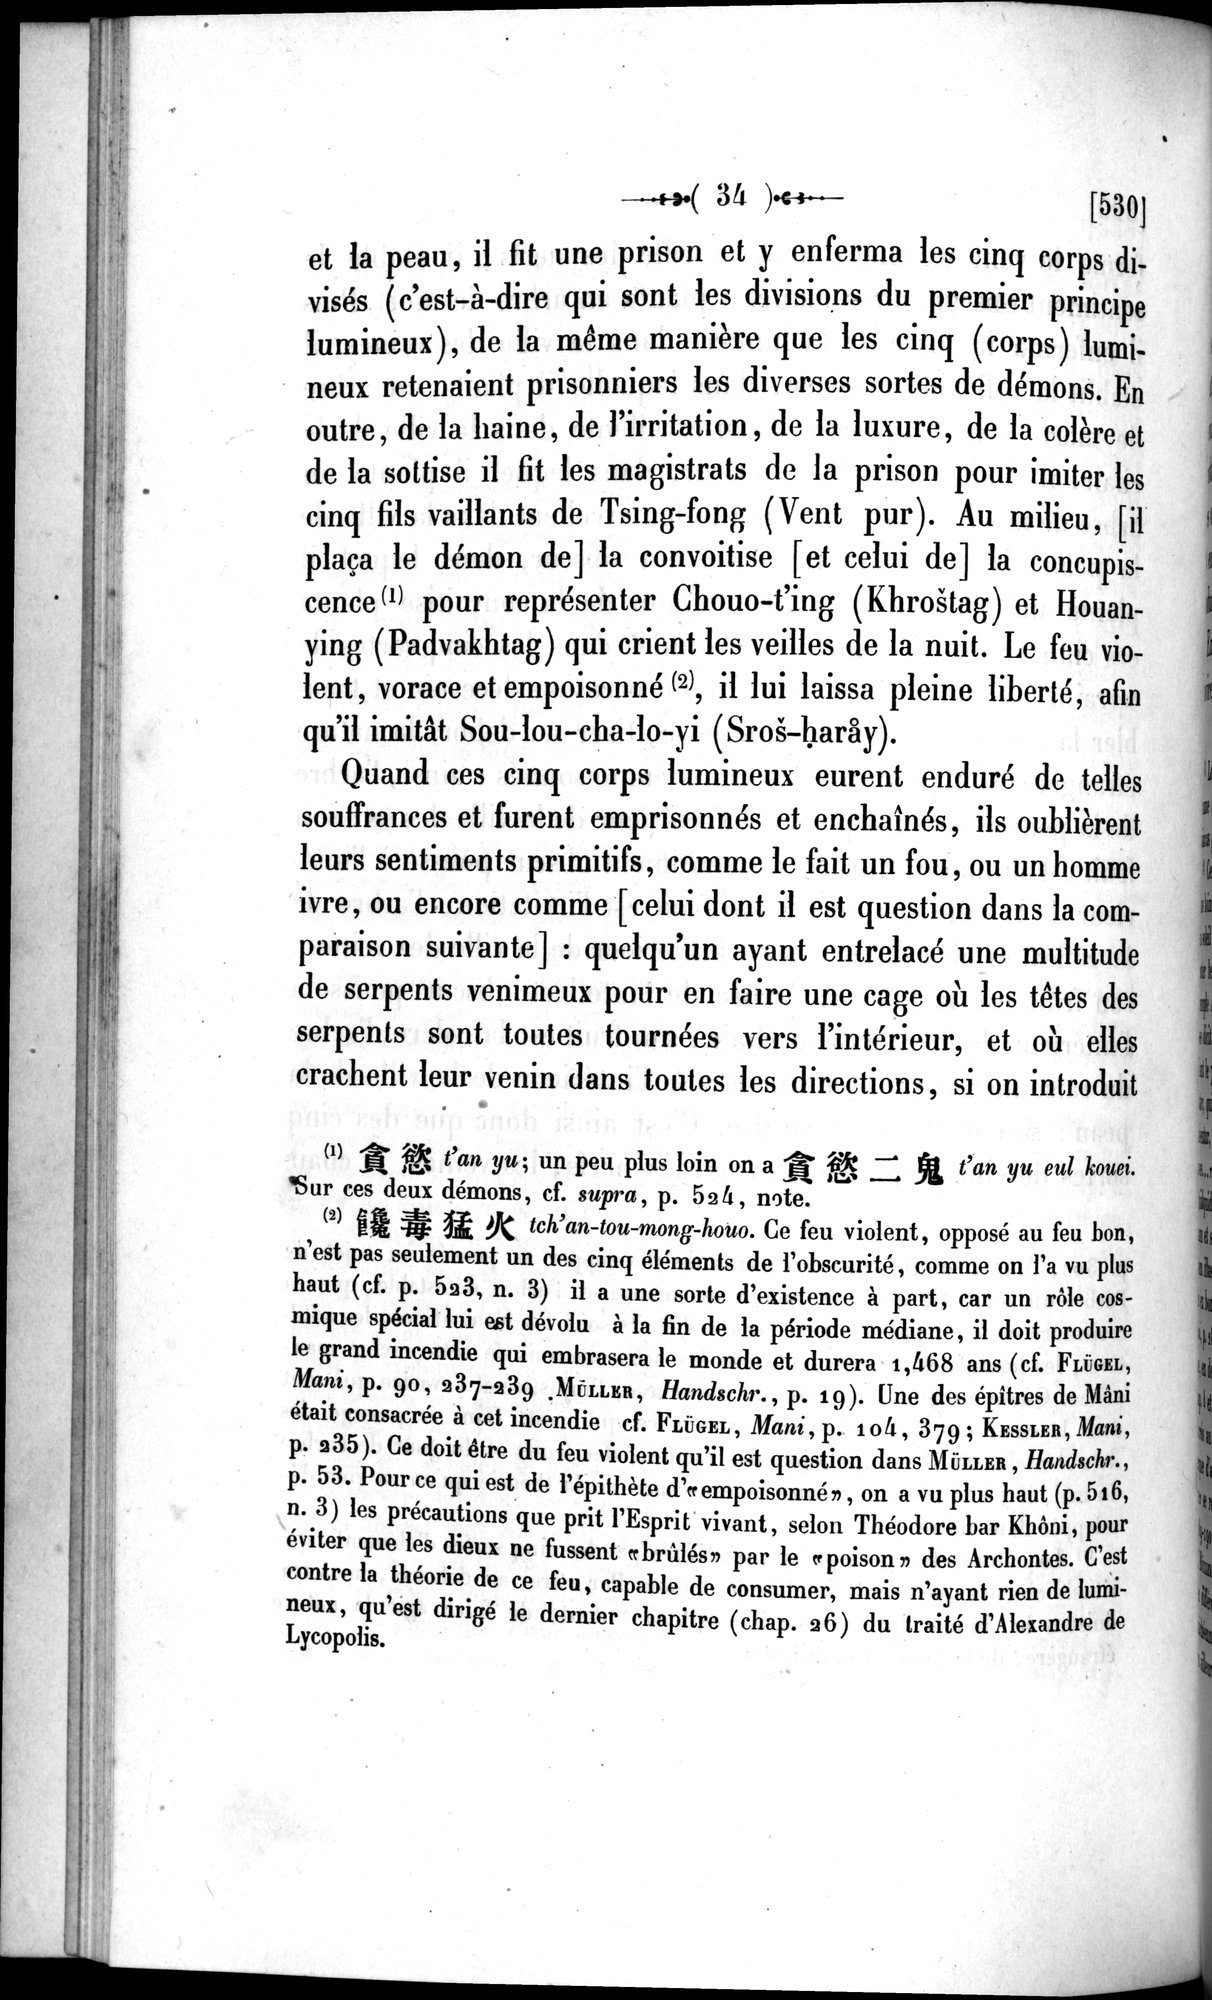 Un traité manichéen retrouvé en Chine : vol.1 / 44 ページ（白黒高解像度画像）